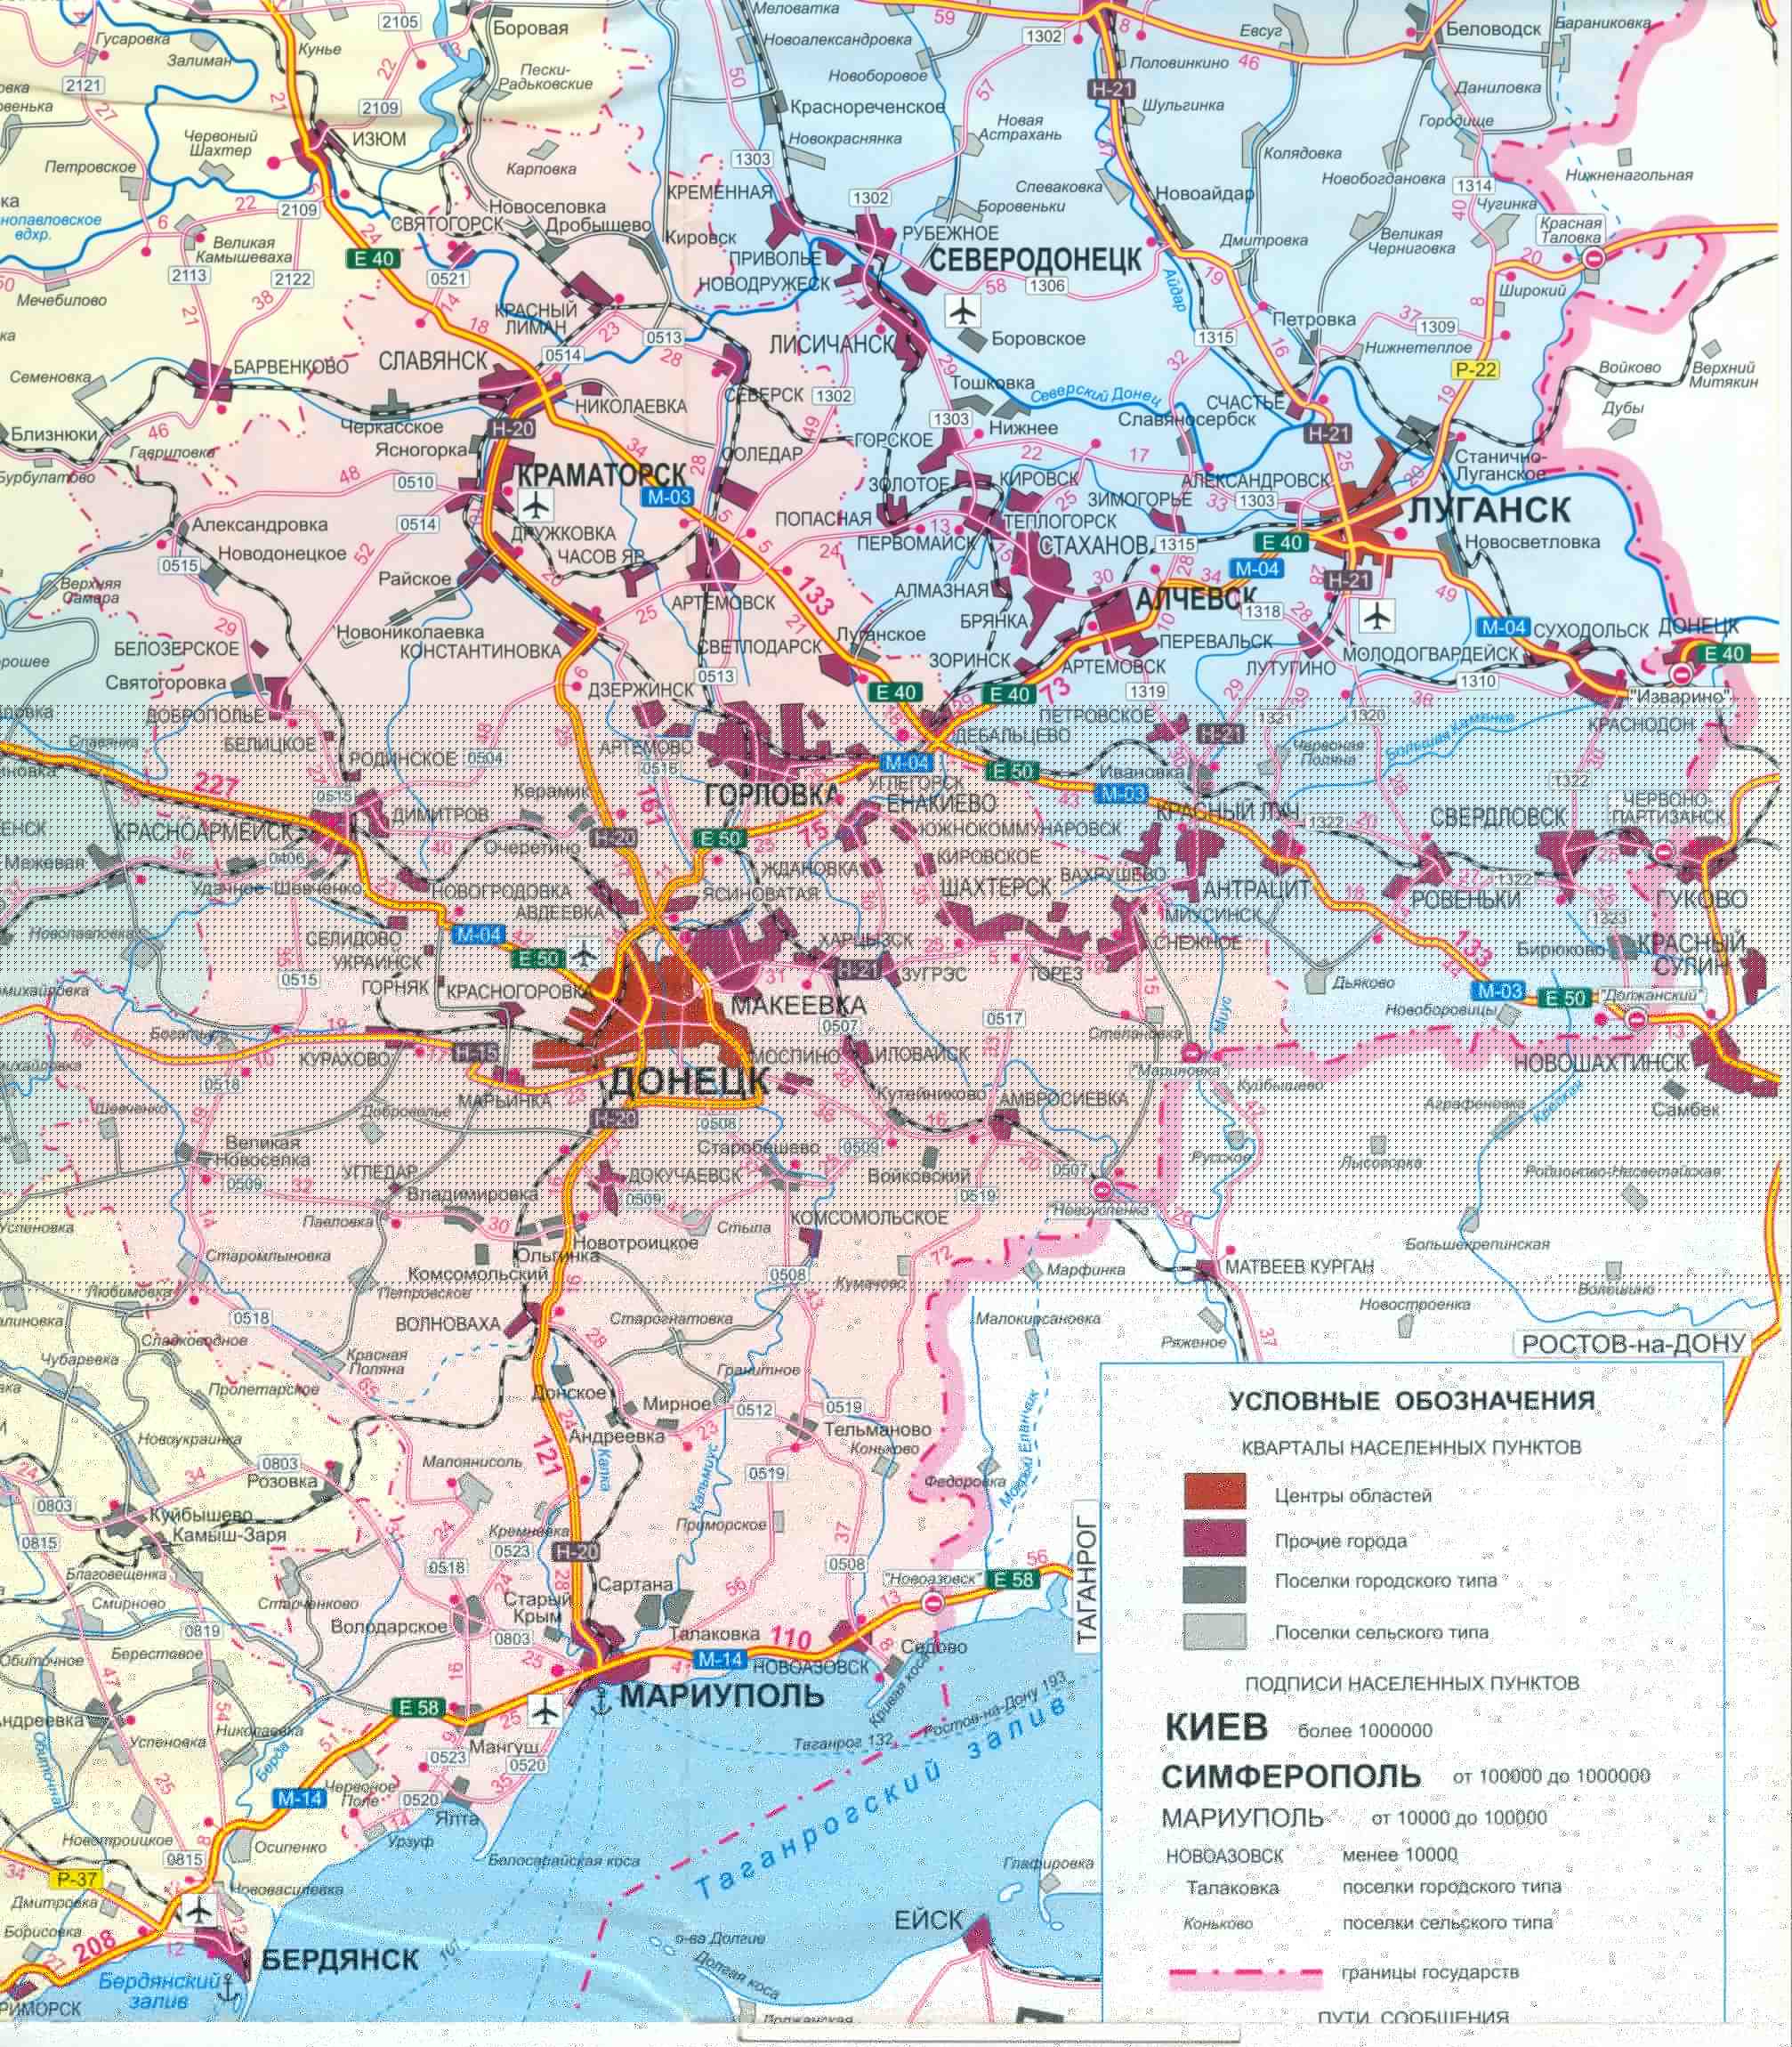 Карта Украины бесплатно. Карта дорог Украины скачать бесплатно. Большая карта дорог Украины бесплатно, E1